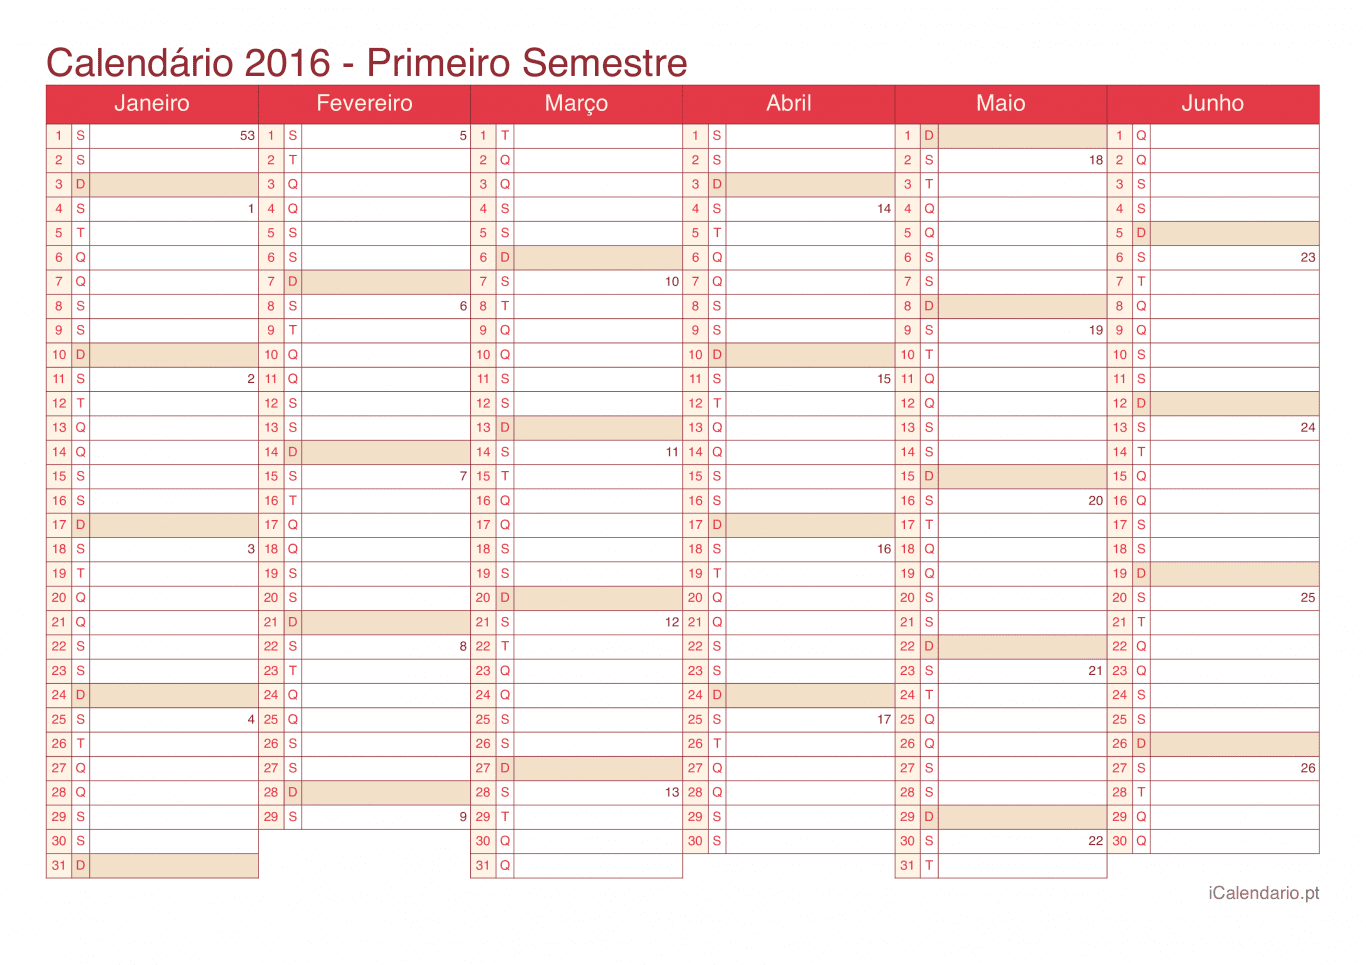 Calendário por semestre com números da semana 2016 - Cherry